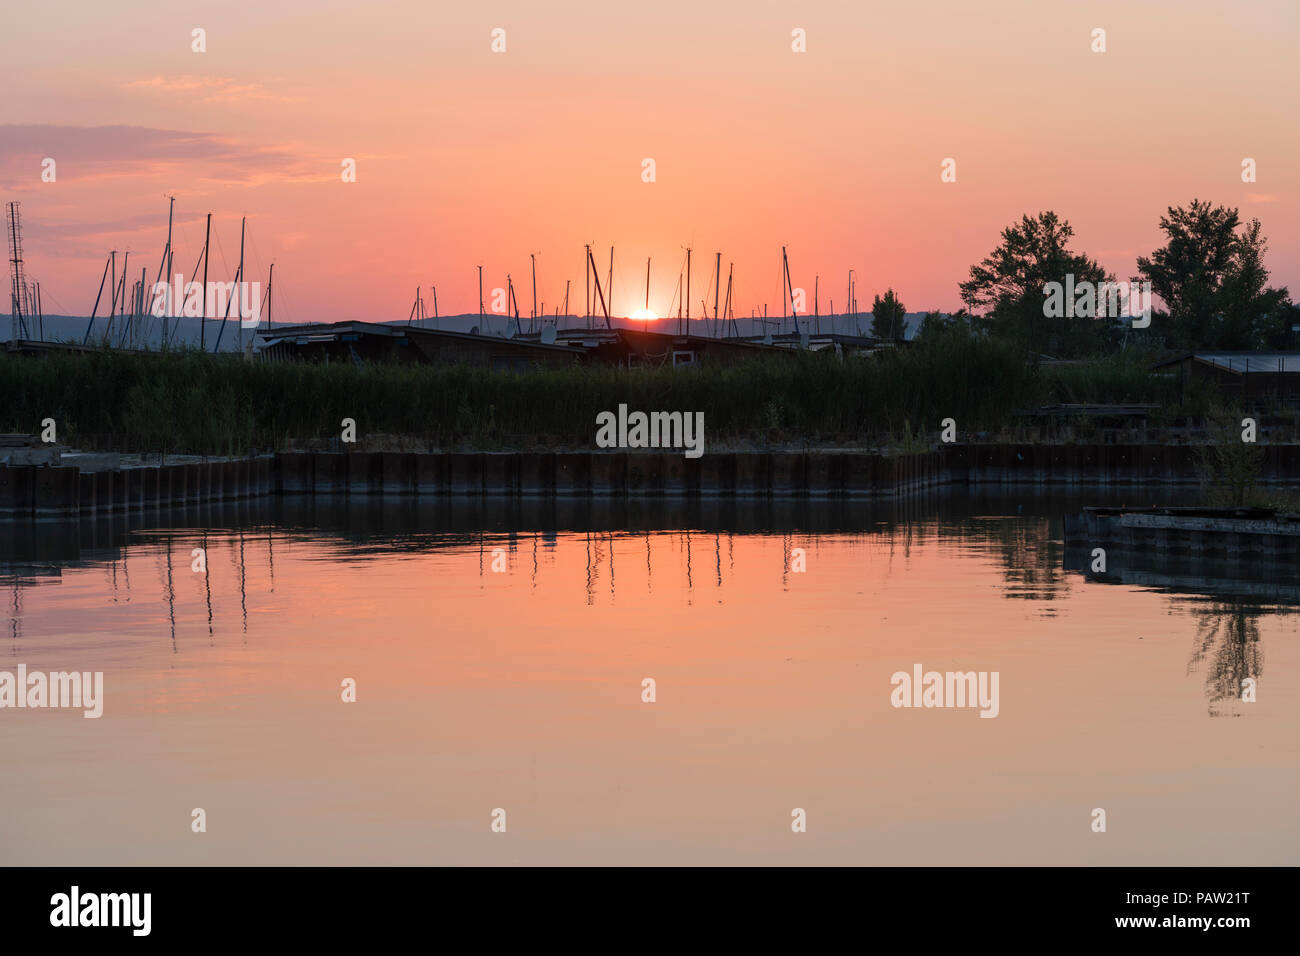 Im Sommer Sonne über Yachtcharter Masten auf Neusiedler See, einem großen Binnensee und beliebtes Reiseziel in Burgenland, Österreich Stockfoto